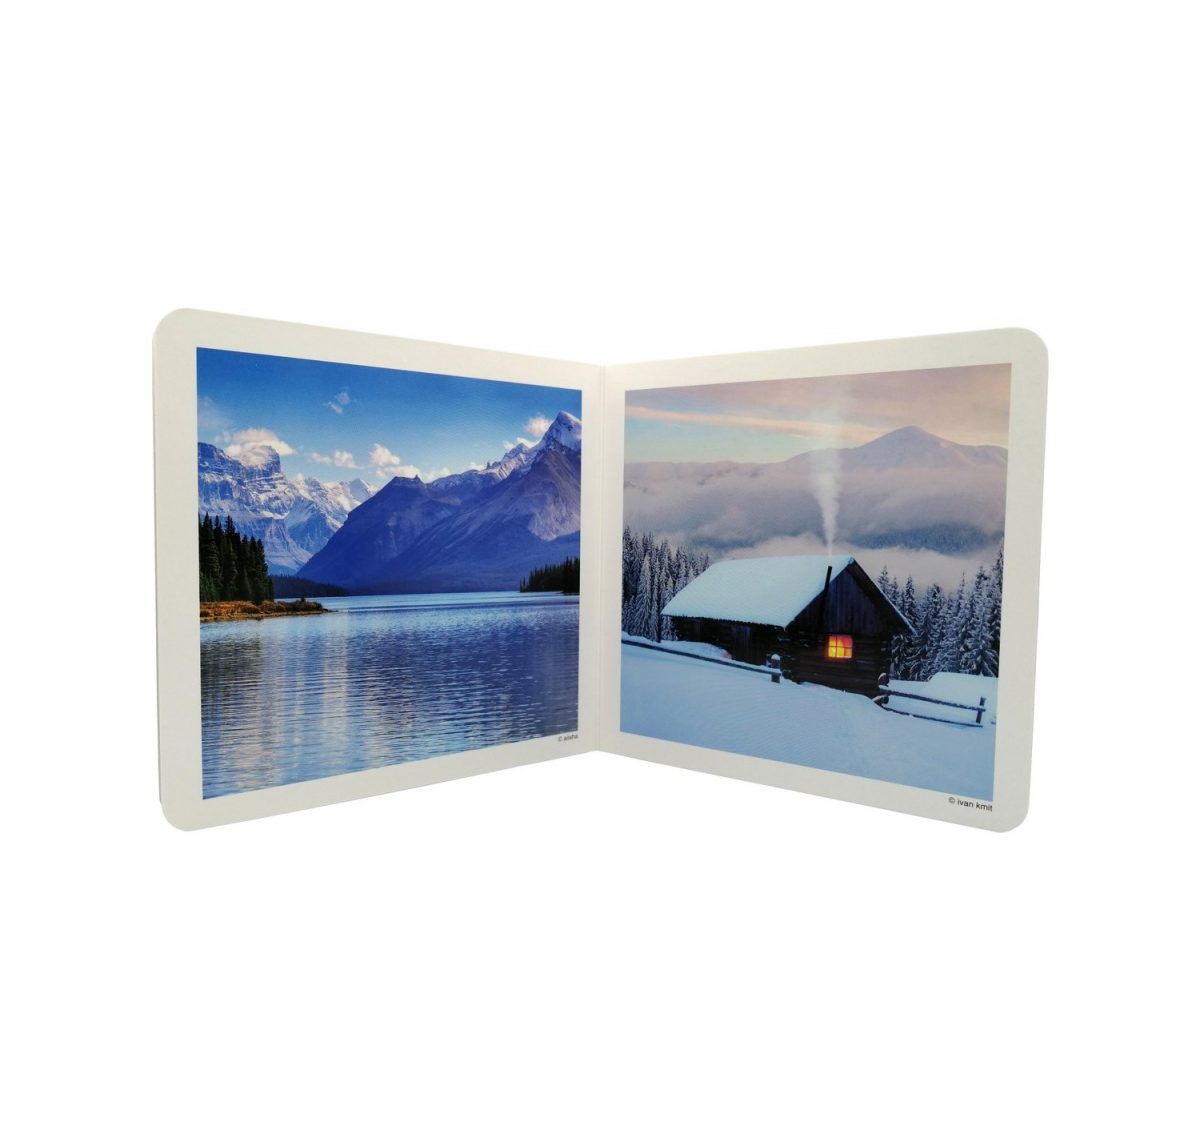 Libro de fotografías de paisajes y elementos relacionados con la montaña. Se incluyen diez fotografías de: pico (portada), río, rebeco, excursionistas, sendero, lago, cabaña, cascada, pastoreo, valle y cordillera.